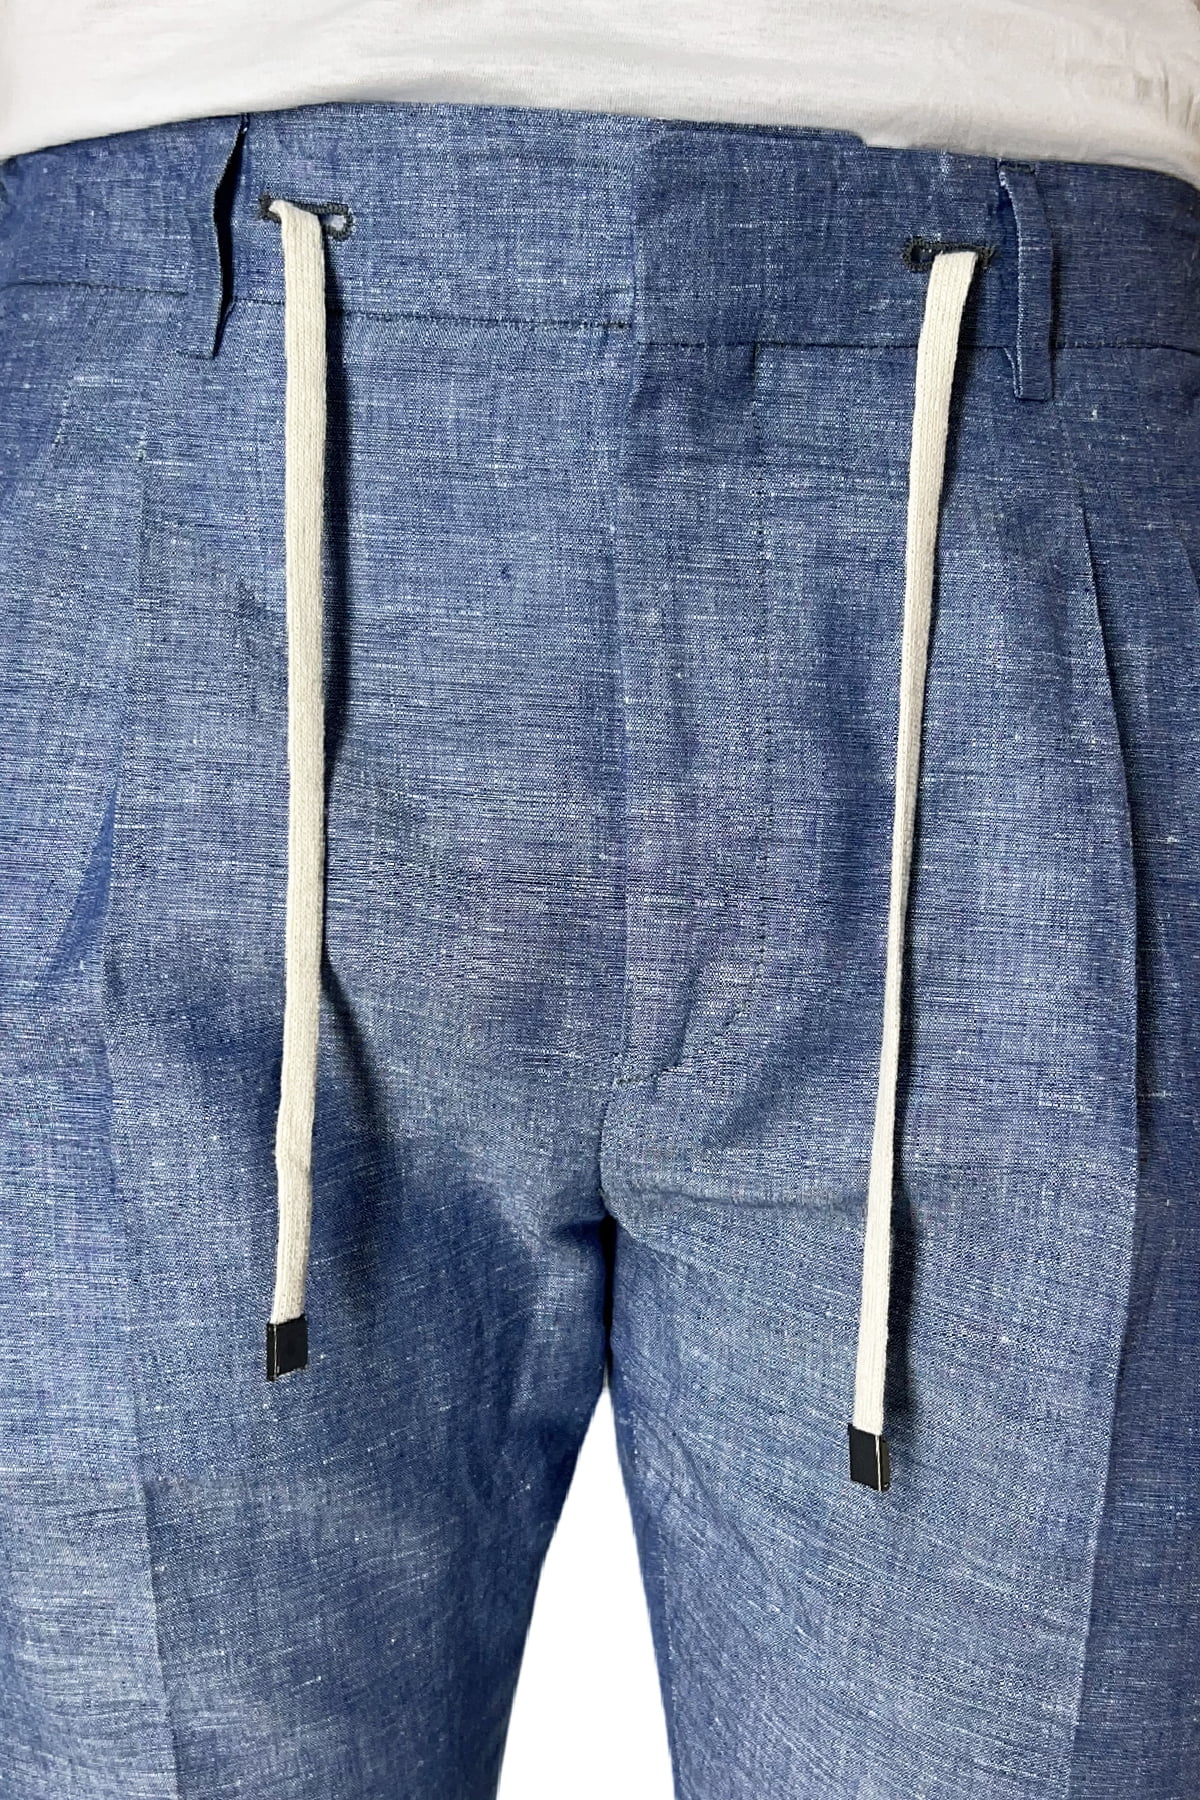 Pantalaccio uomo color denim in lino e cotone tasca america con doppia pence e laccio in vita risvolto 4cm